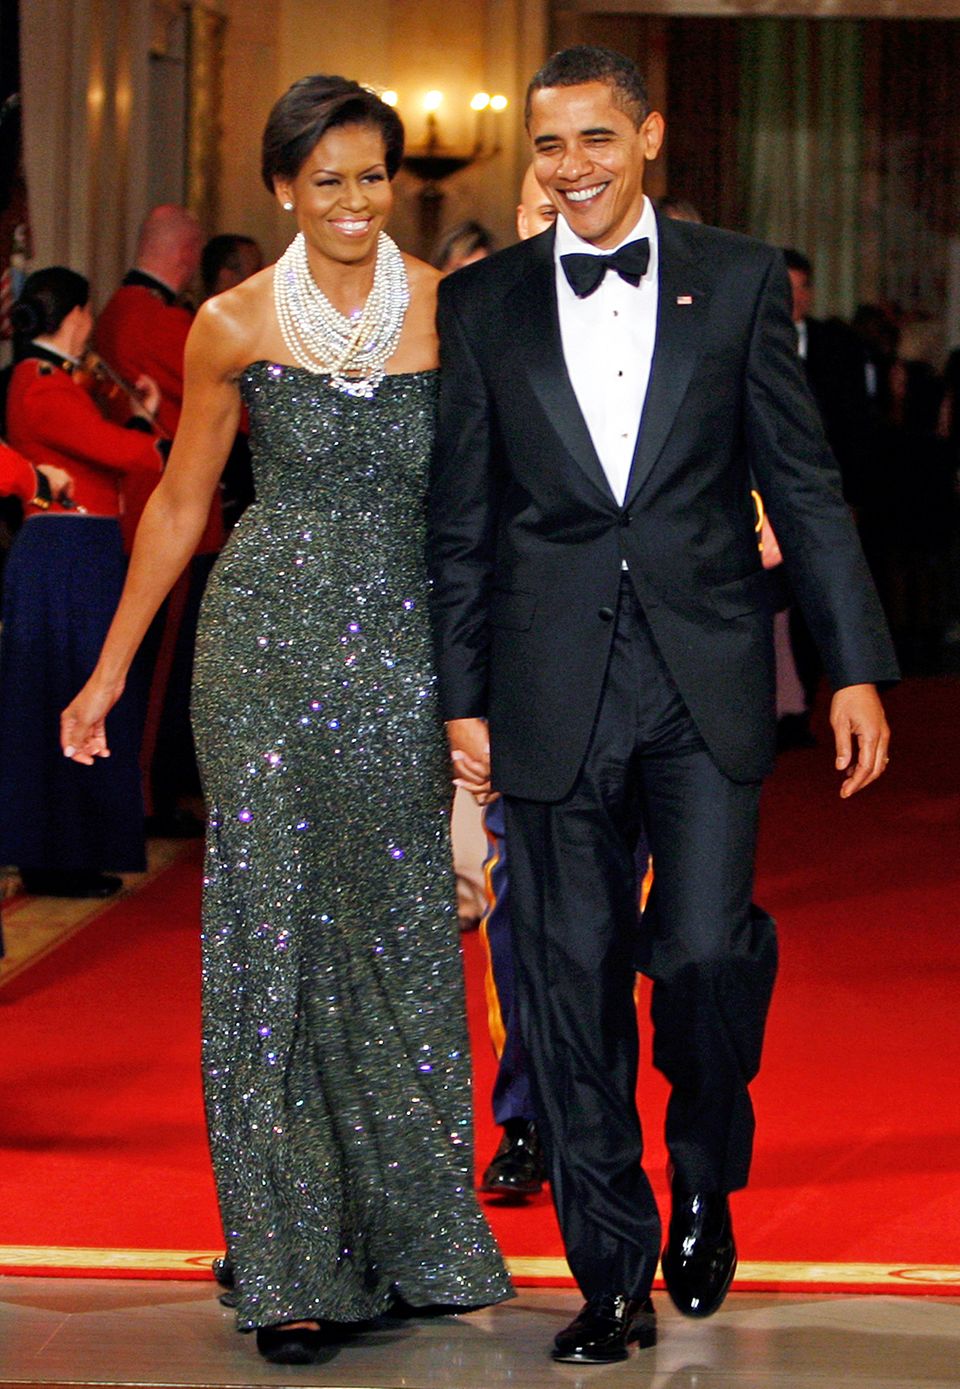 Beim Governor's Dinner 2009 beeindruckt Michelle Obama im grau-glitzernden Glamour-Kleid.